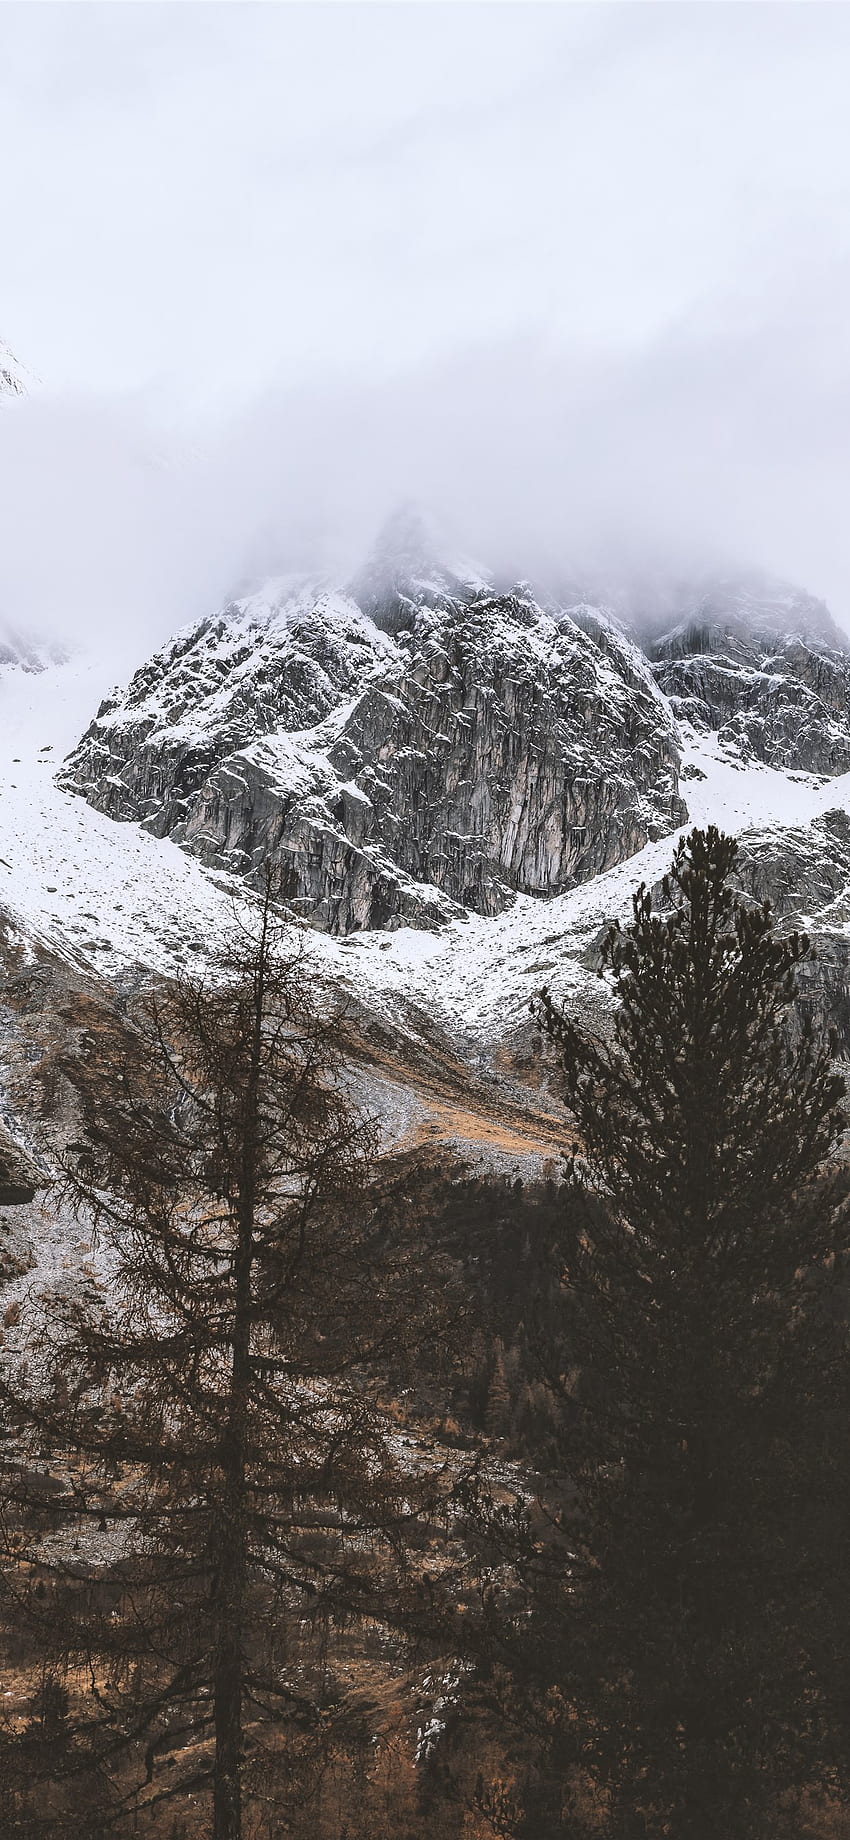 曇り空の下で雪をかぶった岩山 iPhone X, Rocky Mountain iPhone HD電話の壁紙